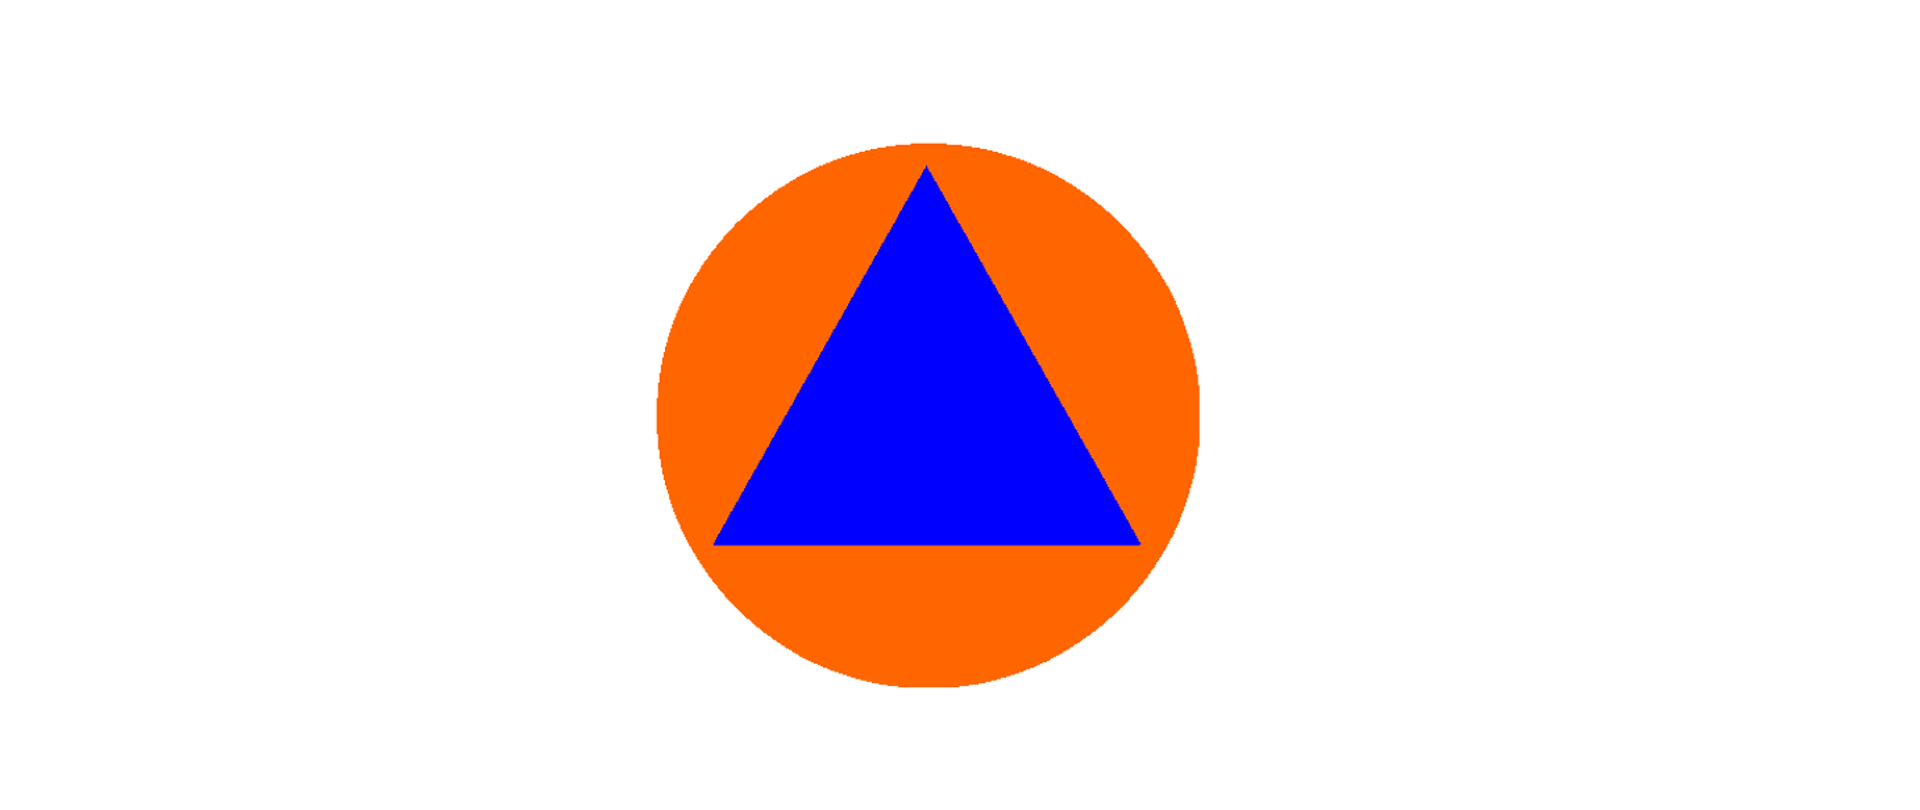 znak graficzny obrony cywilnej tj. niebieski trójkąt równoboczny na pomarańczowym tle, nie dotykający wierzchołkami krawędzi.